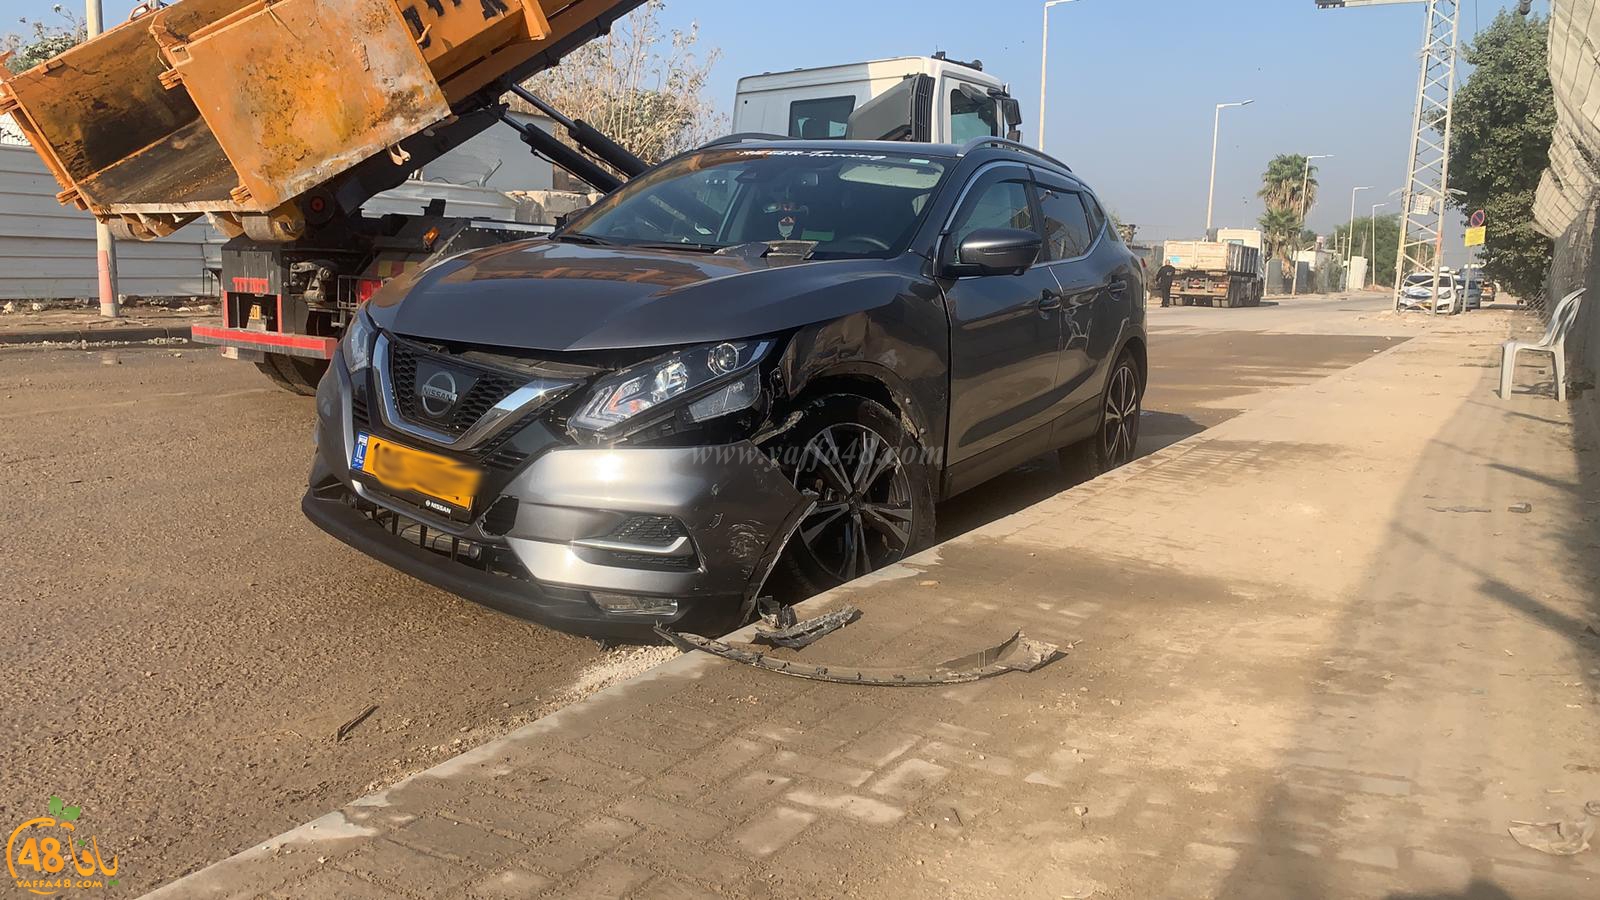  اصابة طفيفة لسائق مركبة بحادث طرق في مدينة اللد